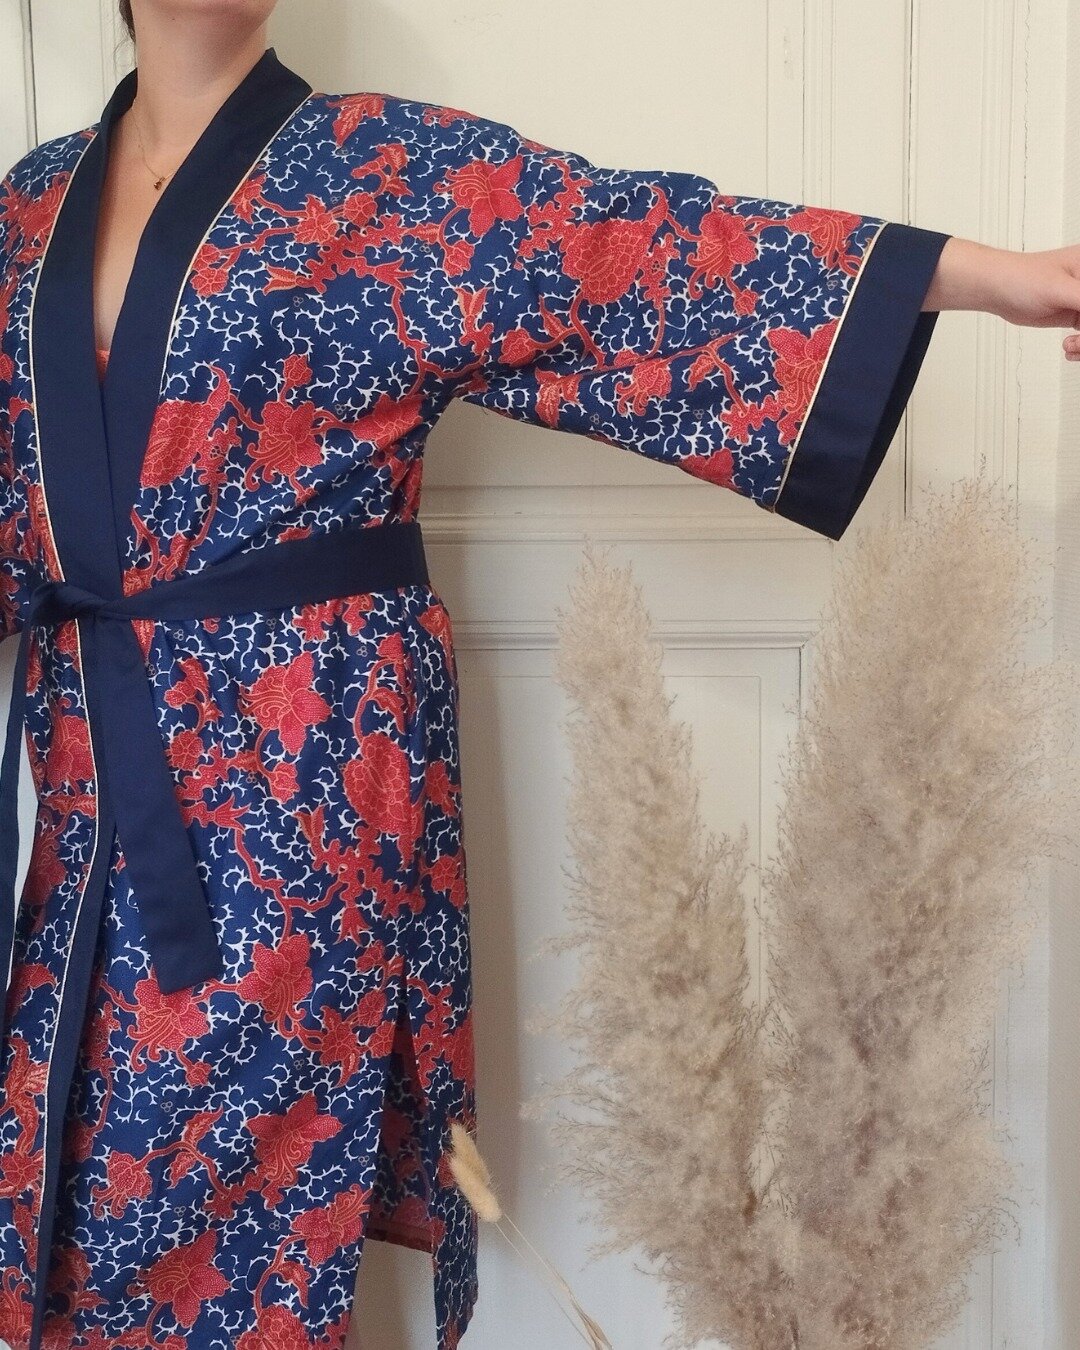 Plongez dans l'univers myst&eacute;rieux et captivant du kimono. Chaque d&eacute;tail de sa mani&egrave;re d'&ecirc;tre port&eacute; cache des significations particuli&egrave;res qui nous &eacute;clairent sur le statut social des femmes qui le rev&ec